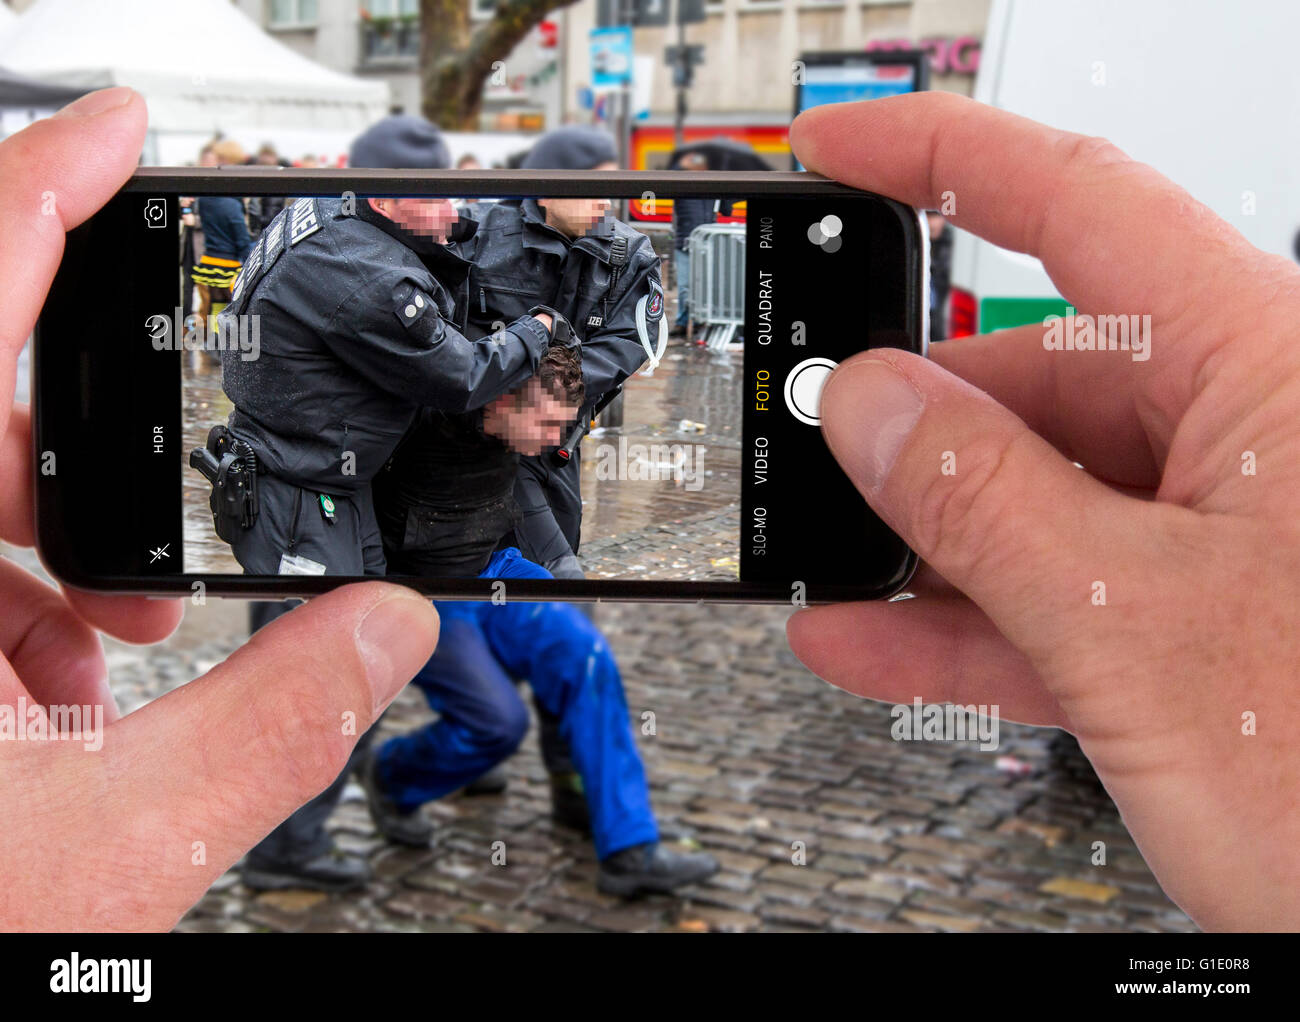 Zuschauer nehmen Sie Bild mit einer Handy-Kamera, Polizei verhaftet einen Mann, symbolisches Bild, Fotomontage, Fotomontage, Stockfoto